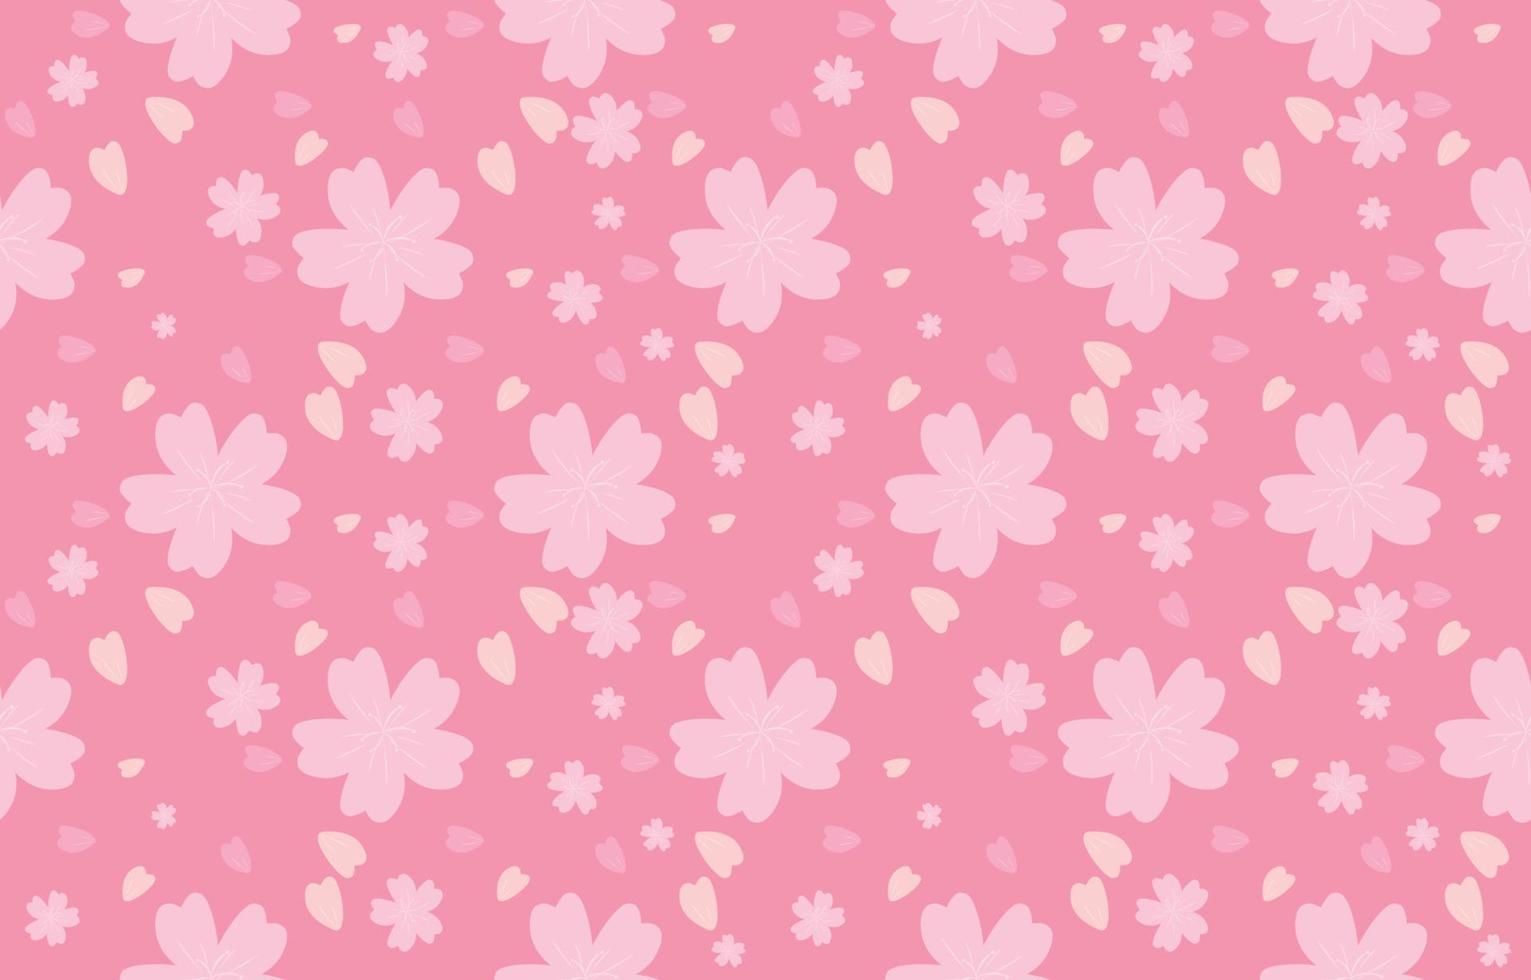 motivo senza cuciture di sakura, motivo in tessuto rosa delicato, vettore di illustrazione del petalo di primavera.